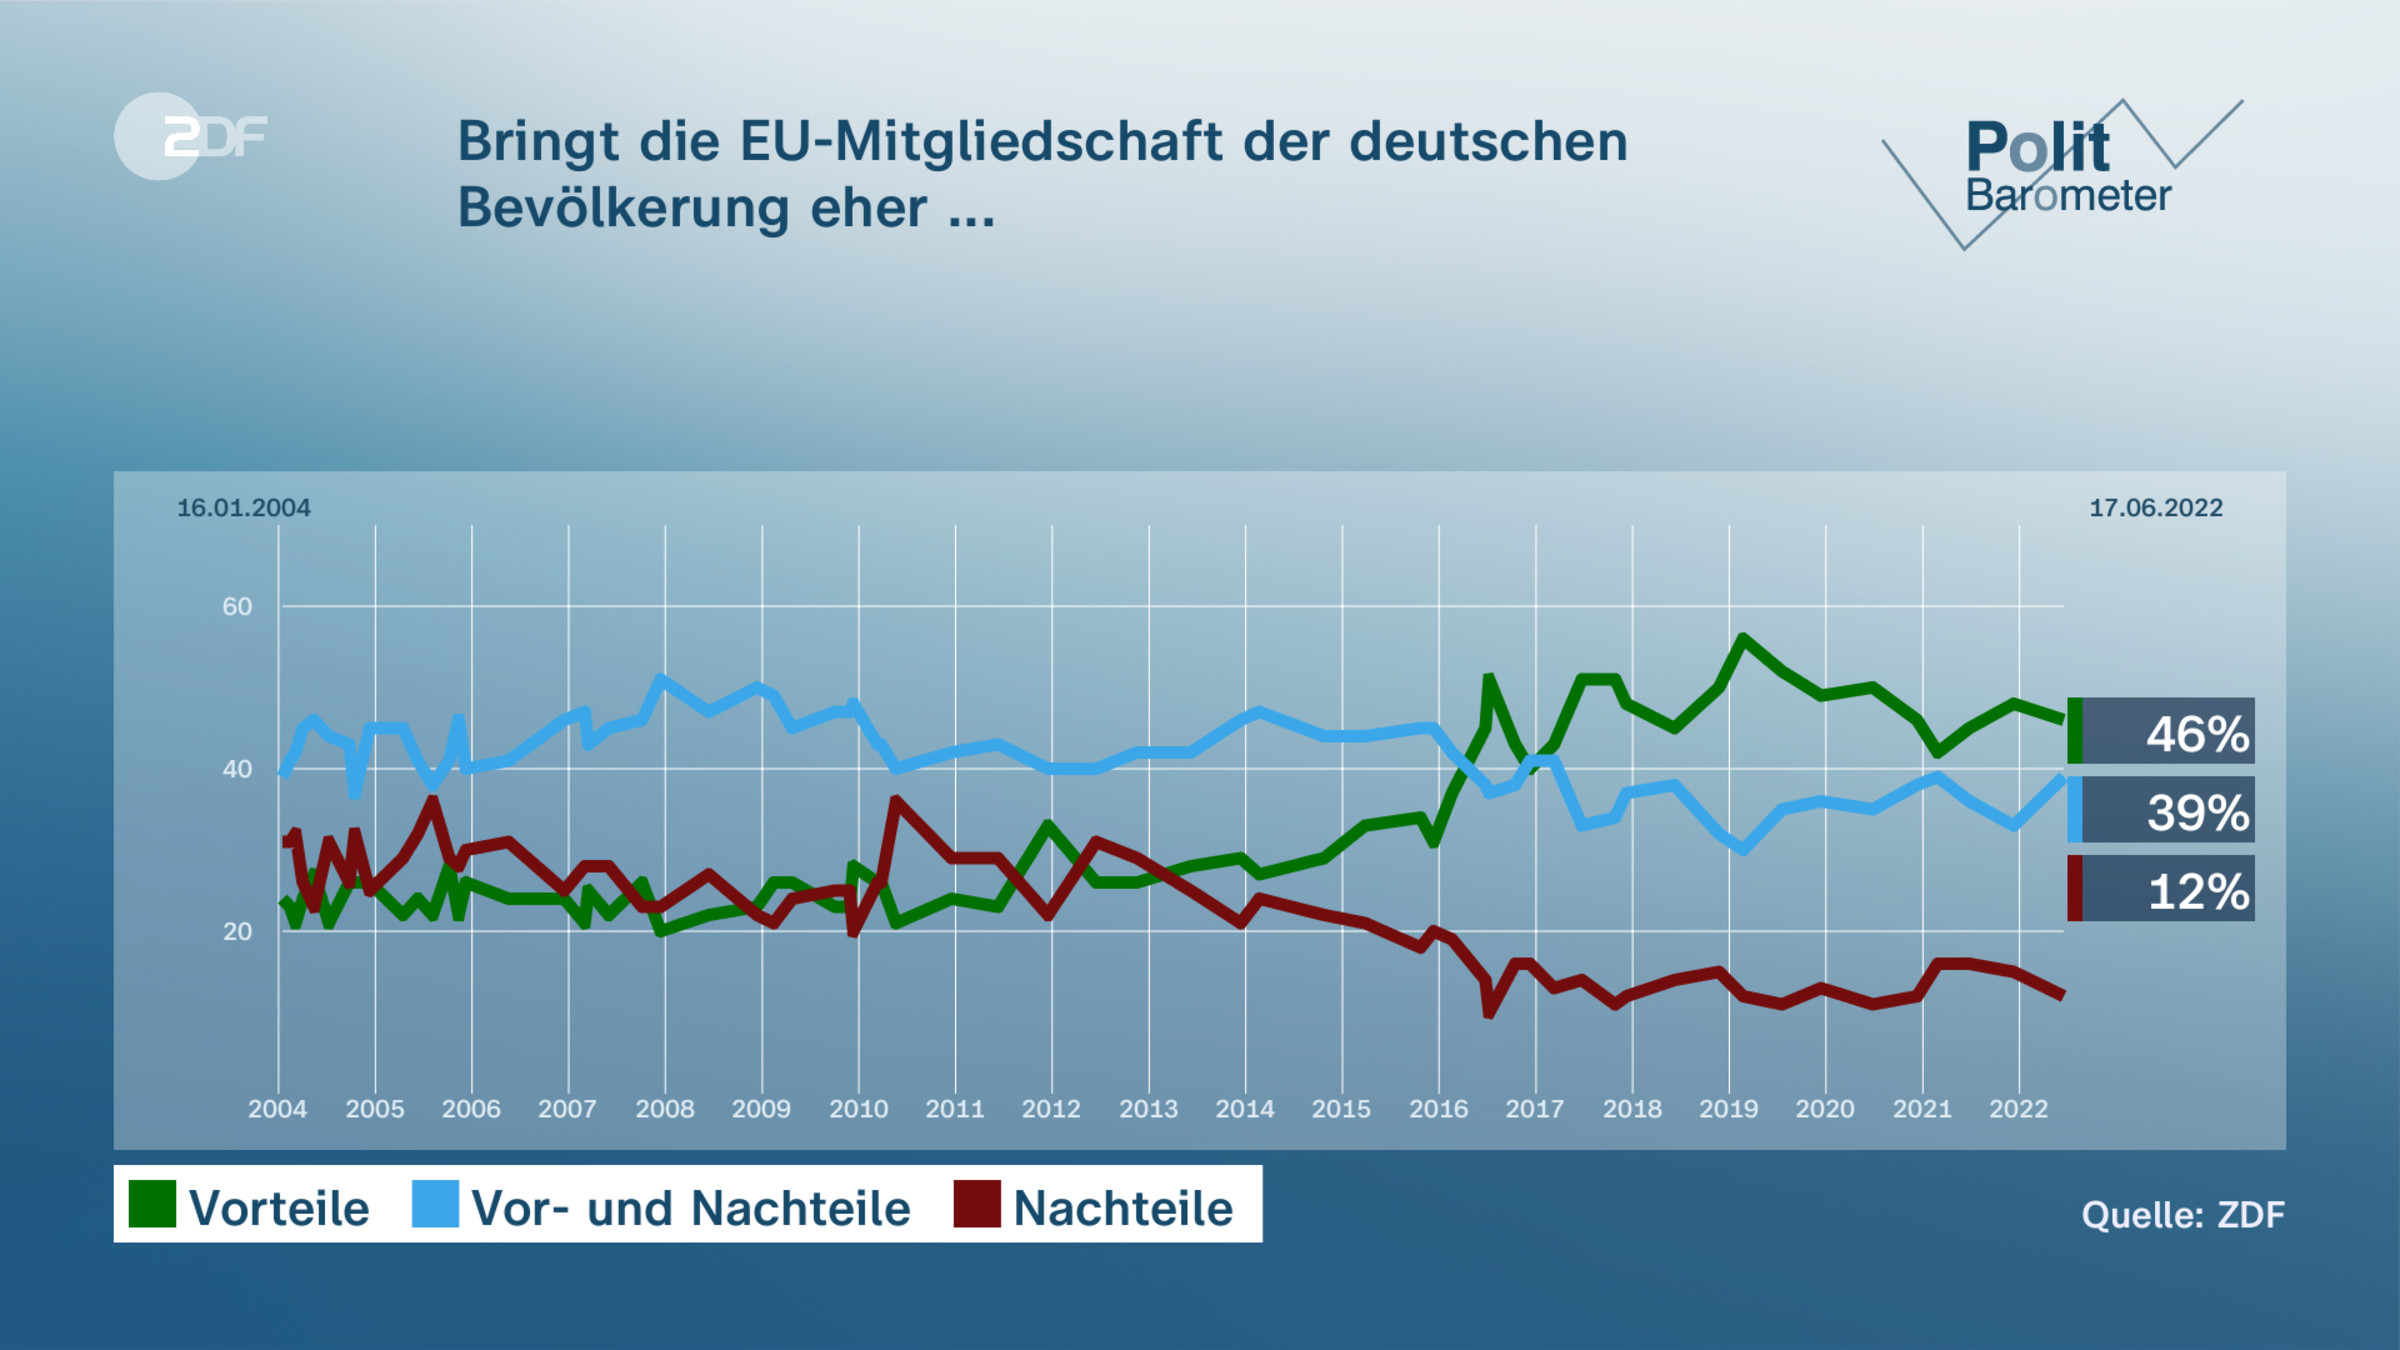 Bringt die EU-Mitgliedschaft der deutschen Bevölkerung eher ...